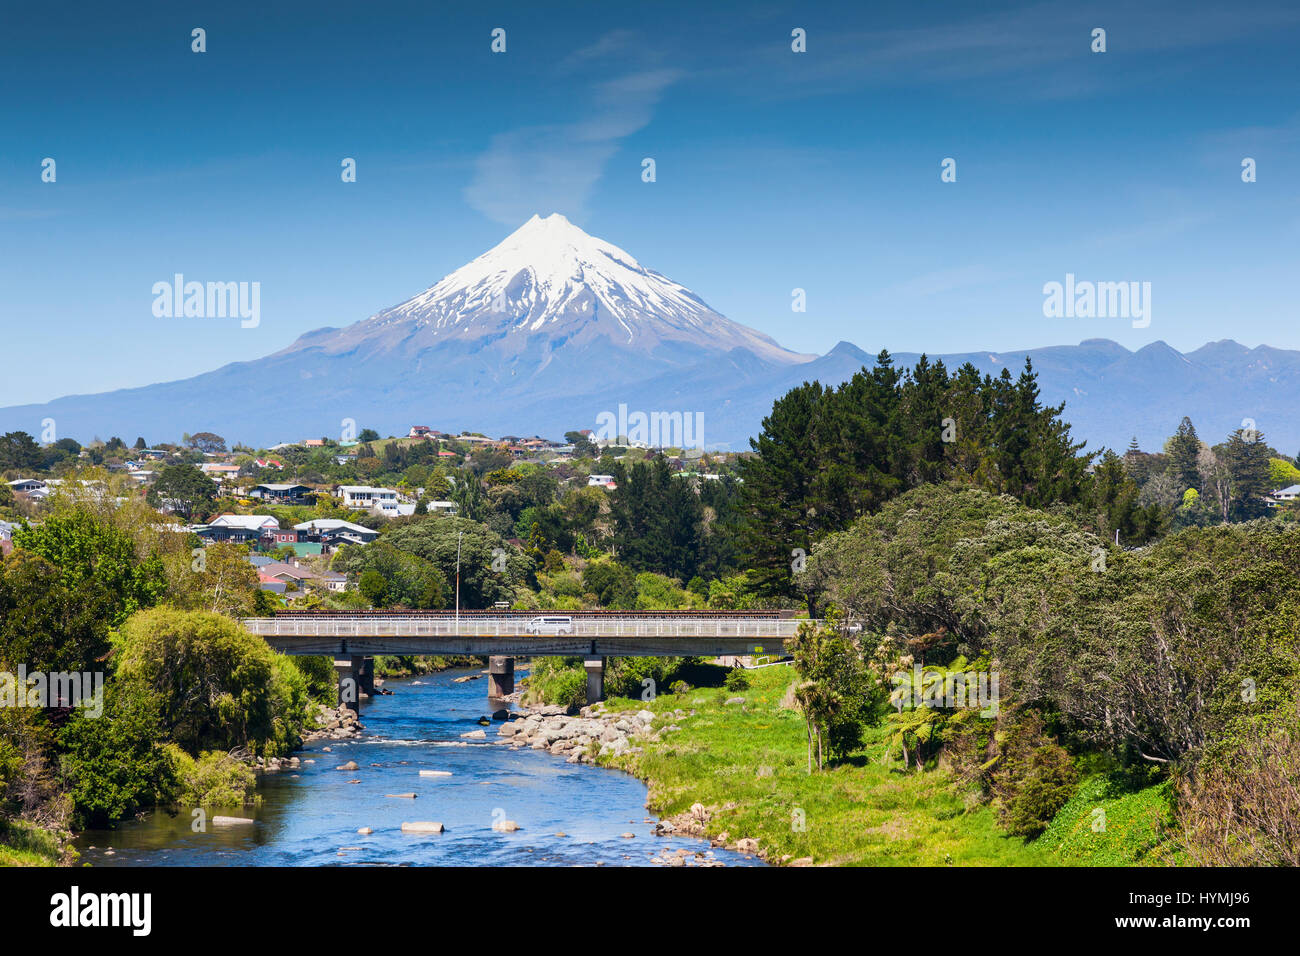 The Waiwhakaiho River, the city of New Plymouth, and Mount Taranaki, New Zealand. Stock Photo